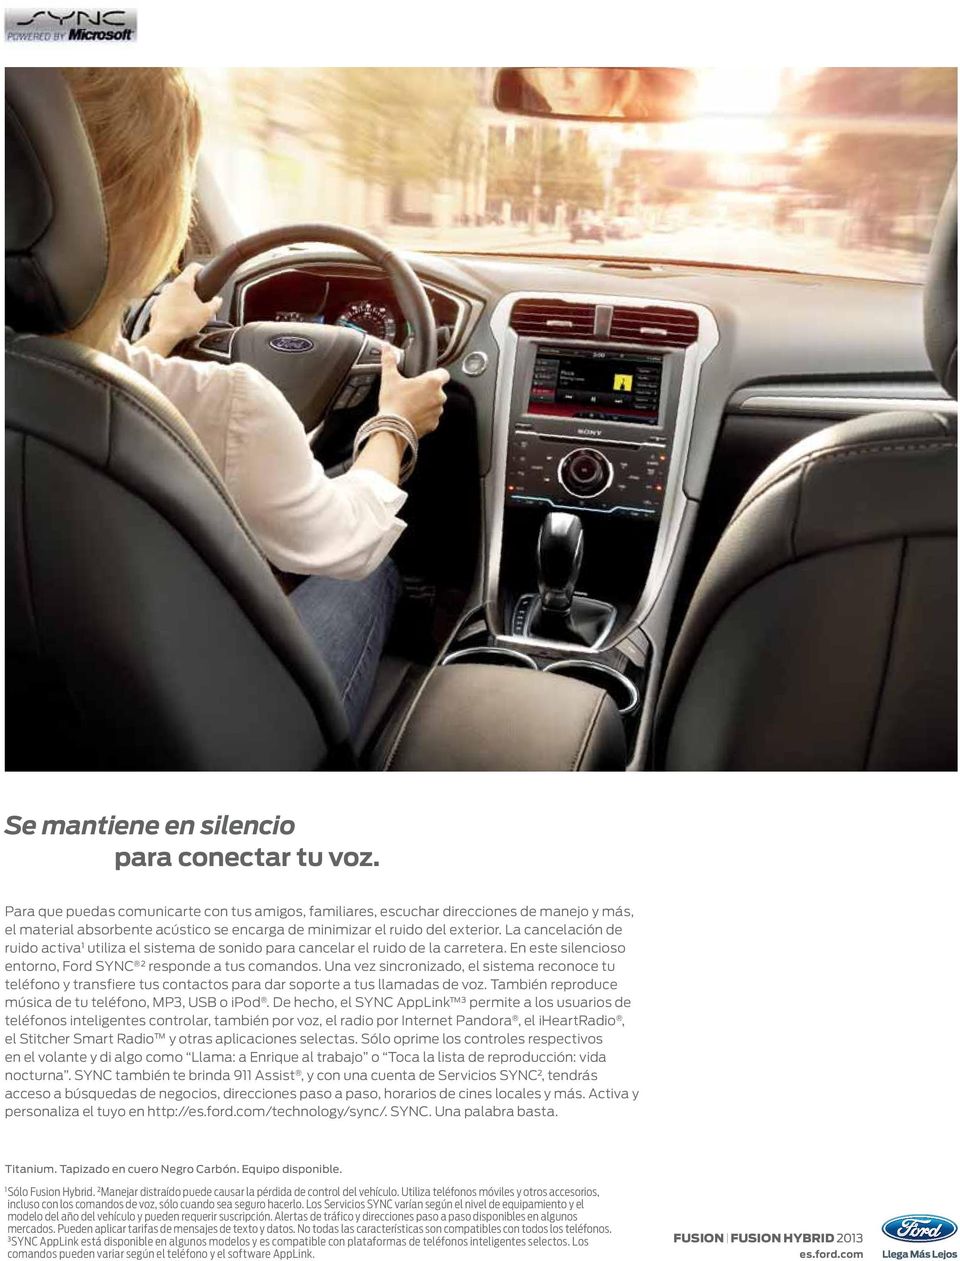 La cancelación de ruido activa utiliza el sistema de sonido para cancelar el ruido de la carretera. En este silencioso entorno, Ford SYNC 2 responde a tus comandos.